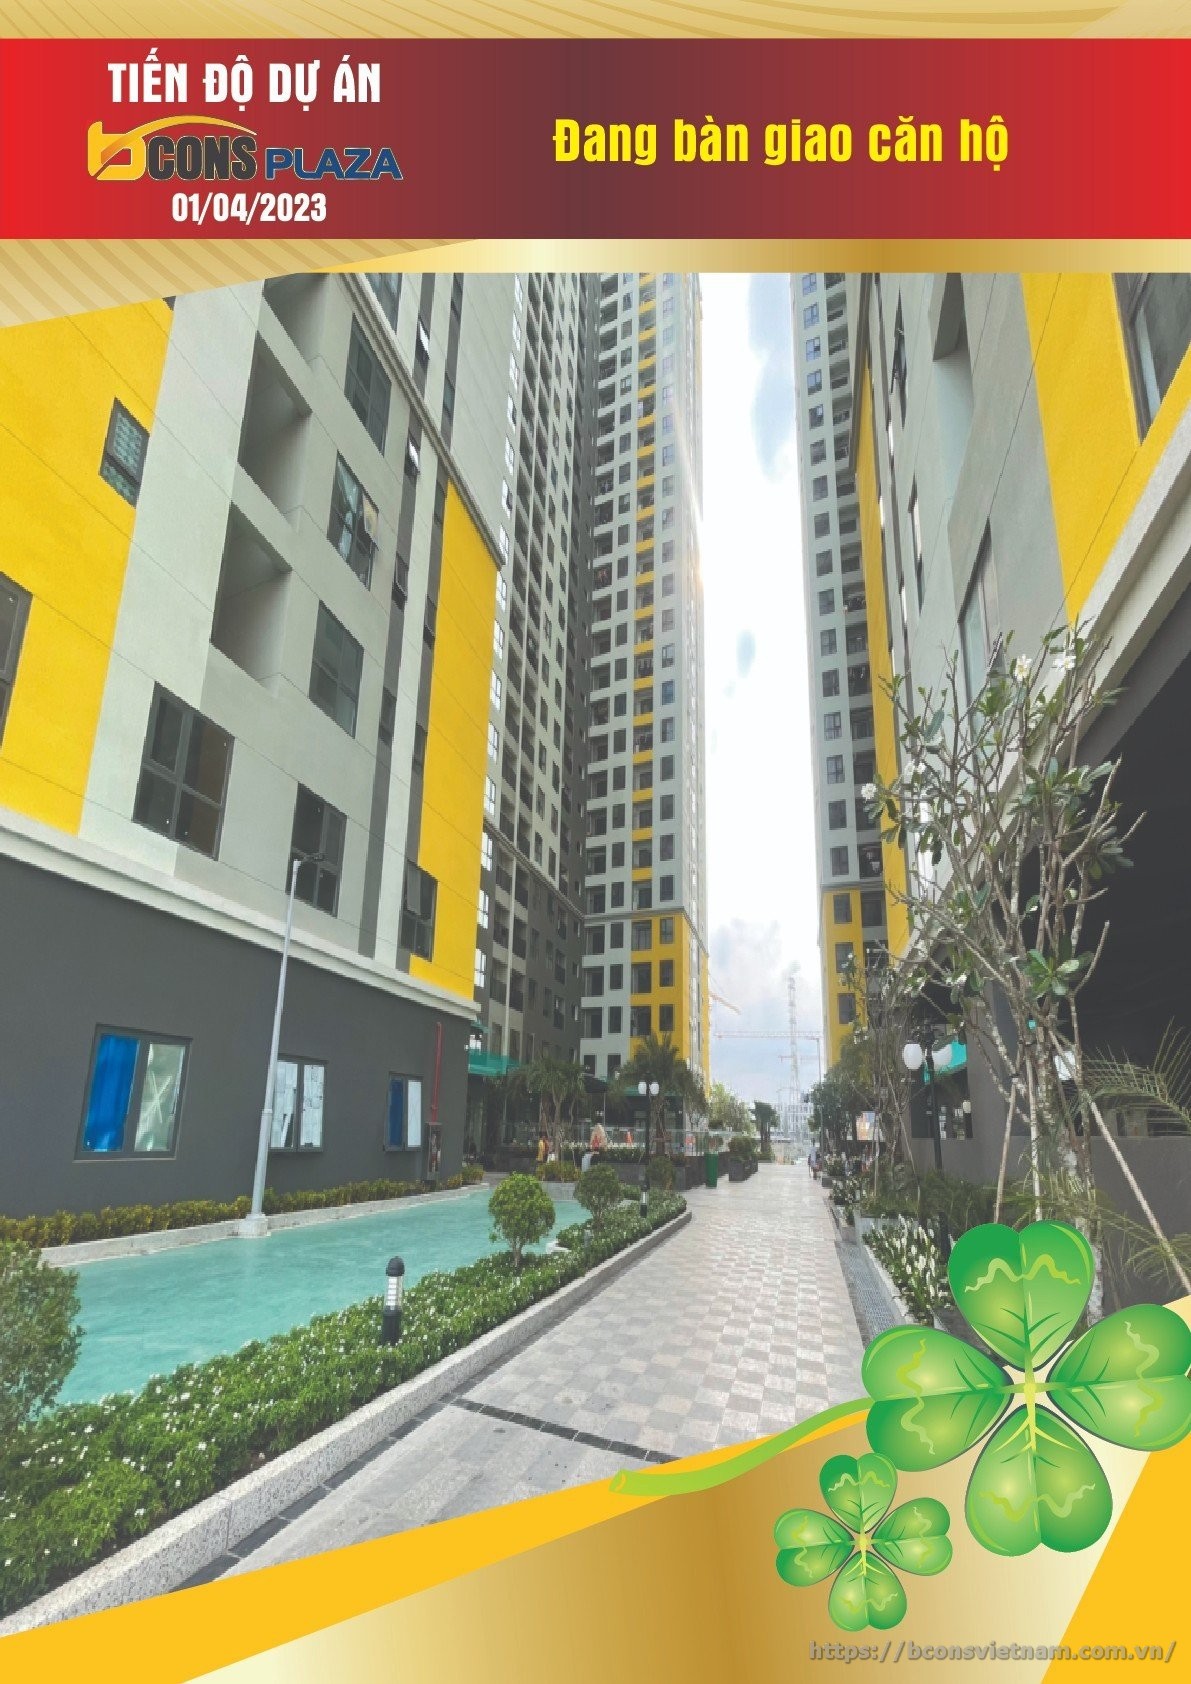 Tiến độ xây dựng căn hộ Bcons Plaza tháng 04 năm 2023